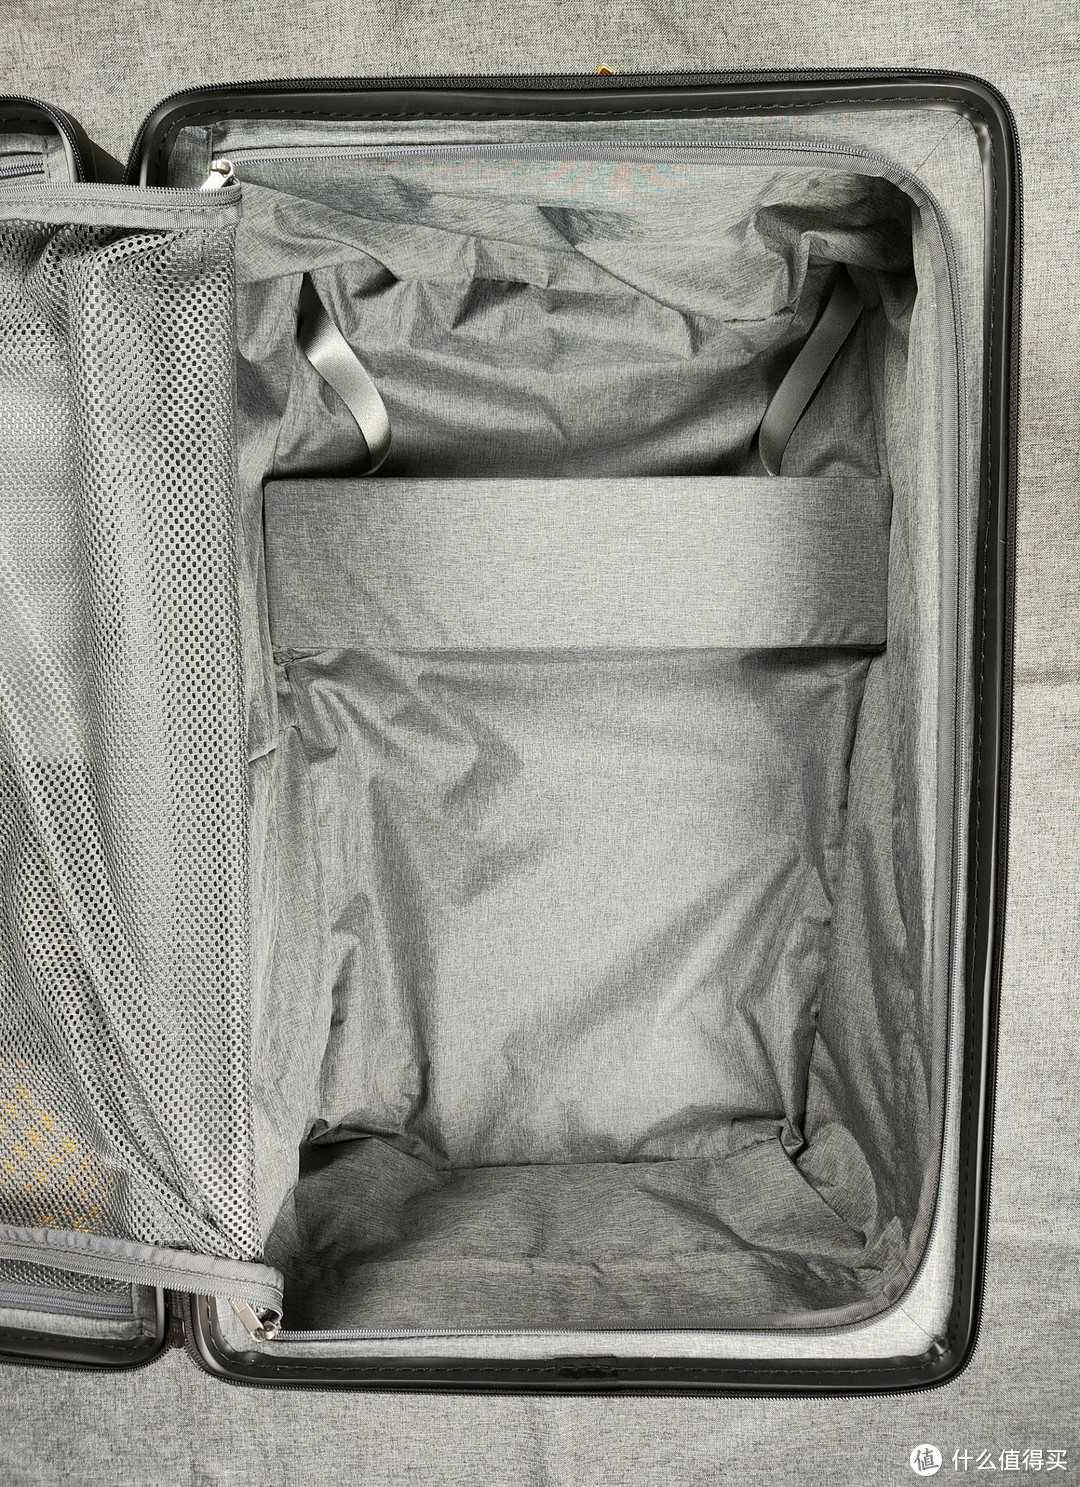 设计小心思，容量大提升，地平线8号大旅行家行李箱使用体验！